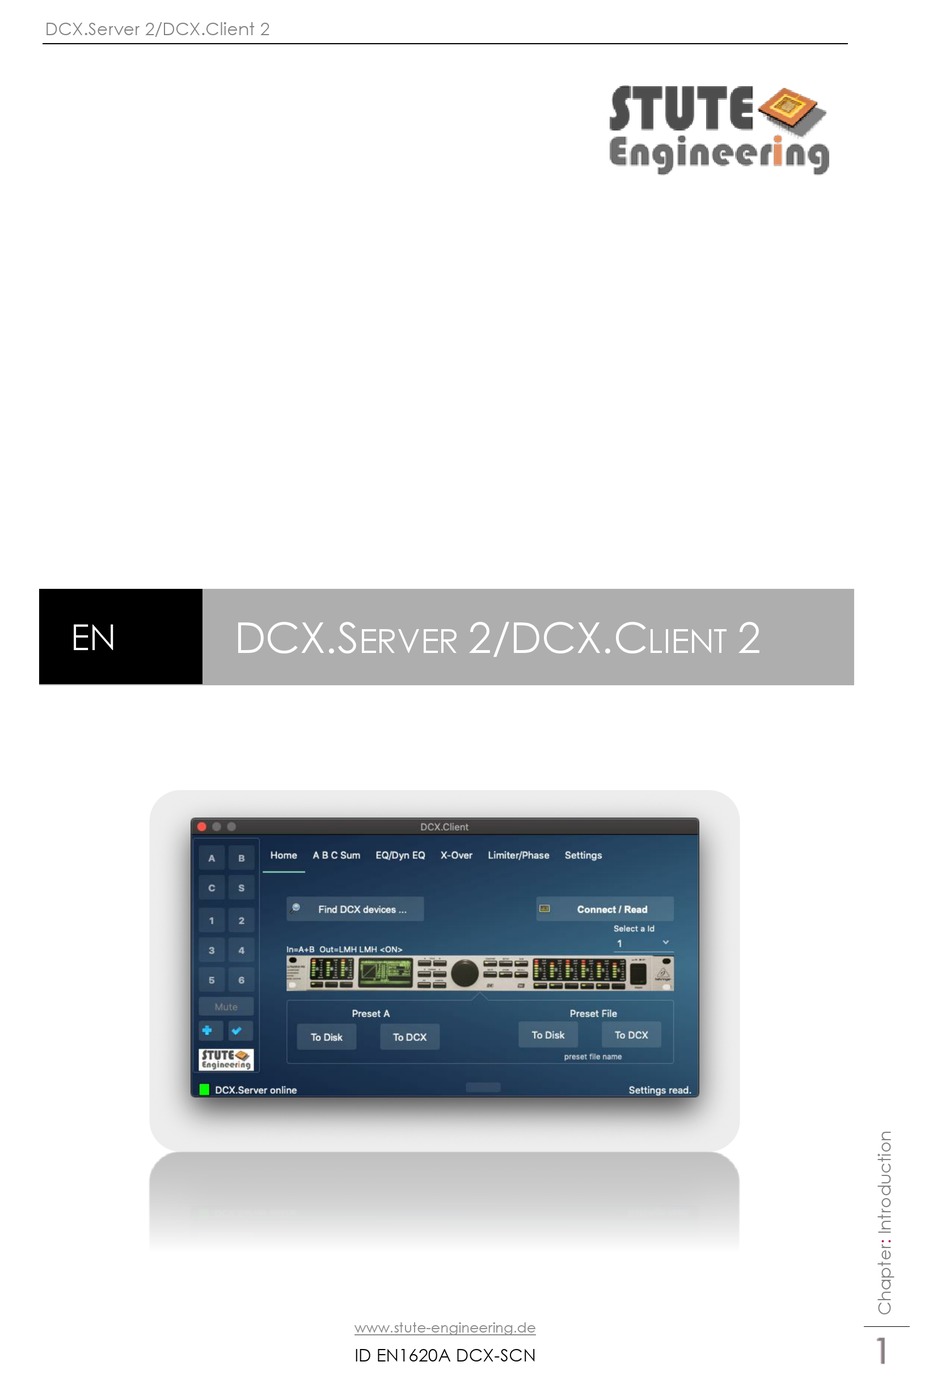 behringer dcx2496 remote software download